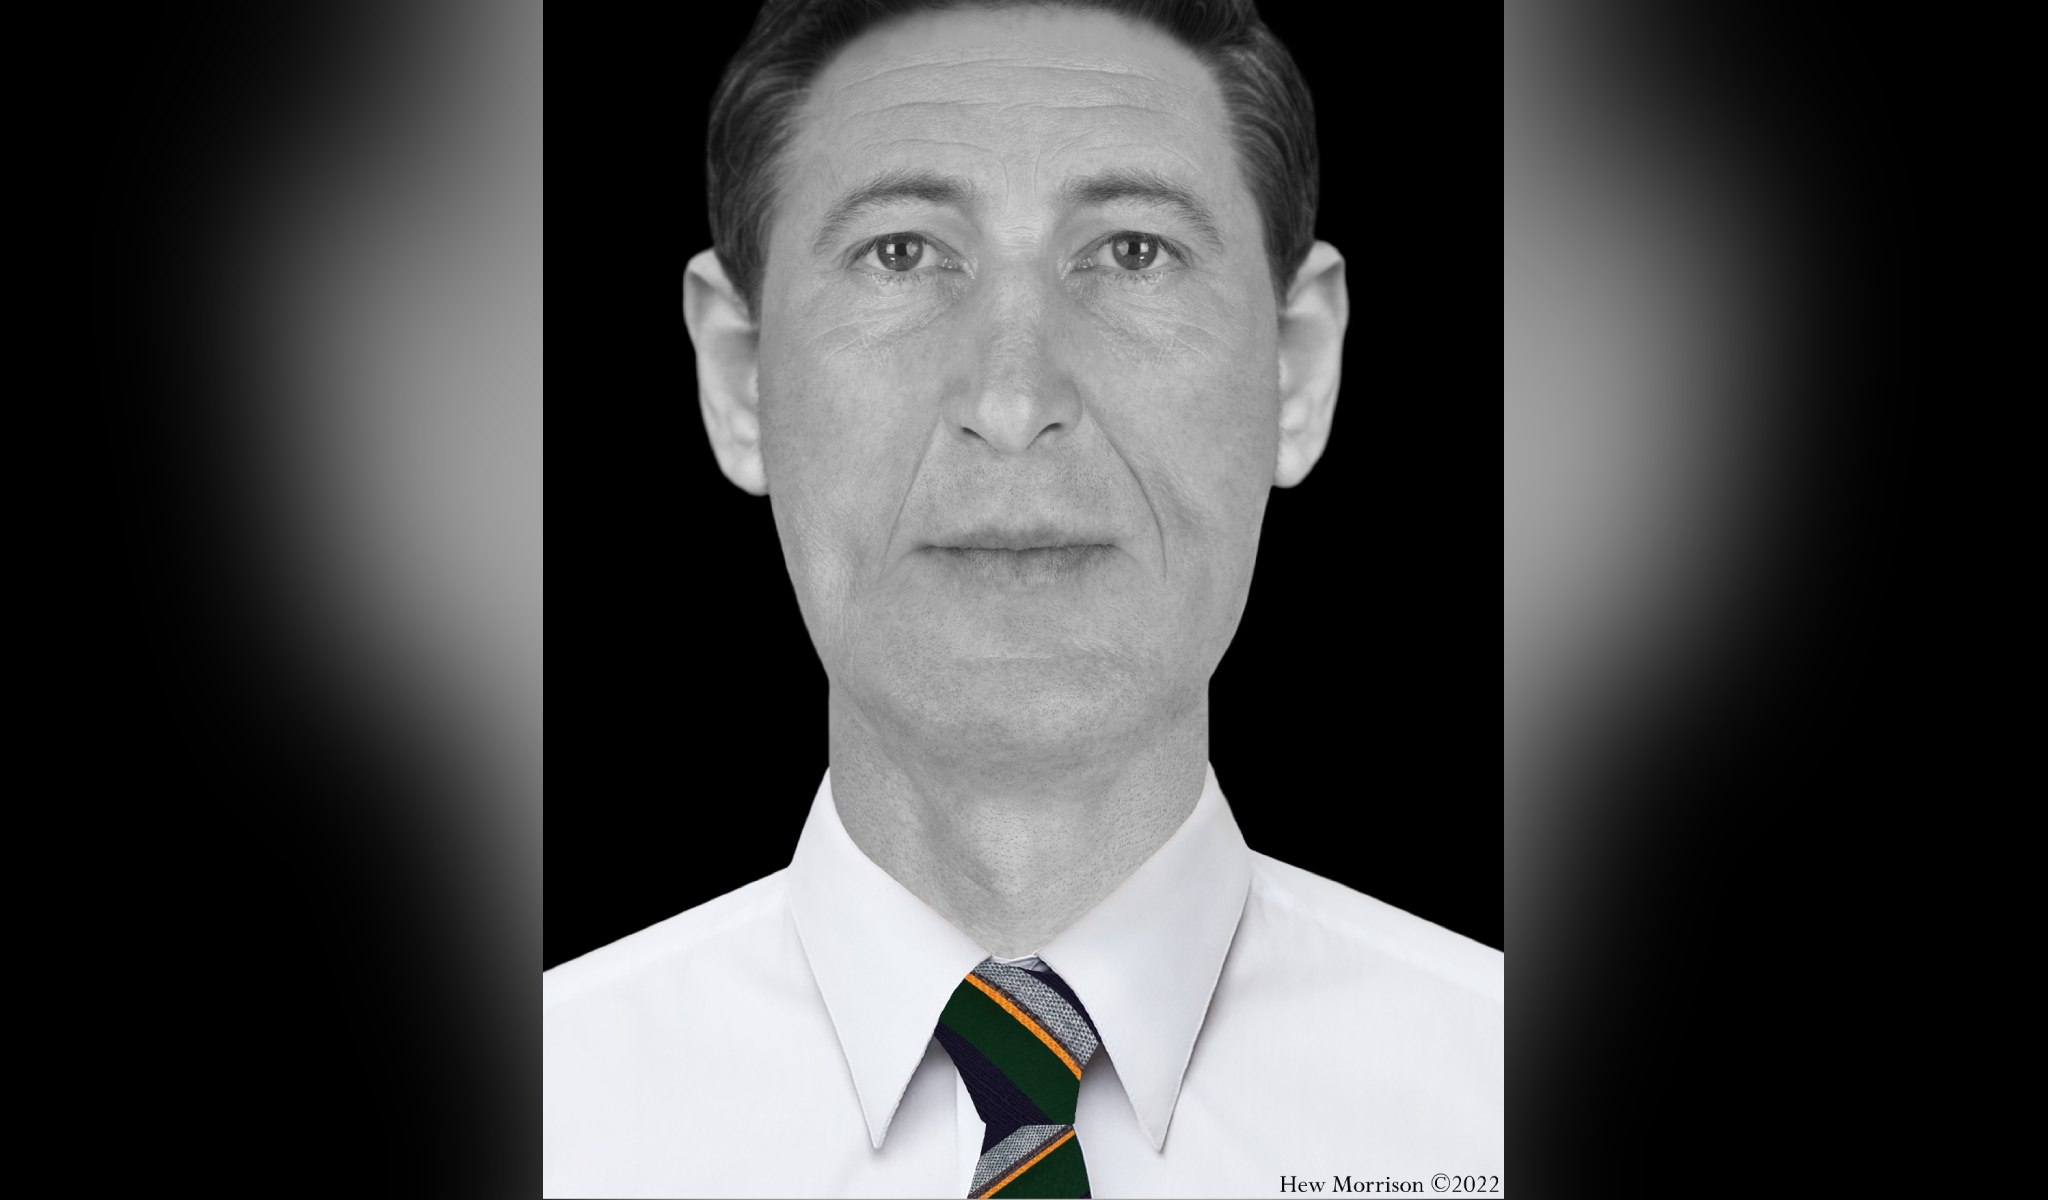 Zu sehen ist eine Rekonstruktion eines Fotos eines Mannes mit länglichem Gesicht, ohne Bart, er trägt eine grau-dunkle Krawatte mit gelben Streifen